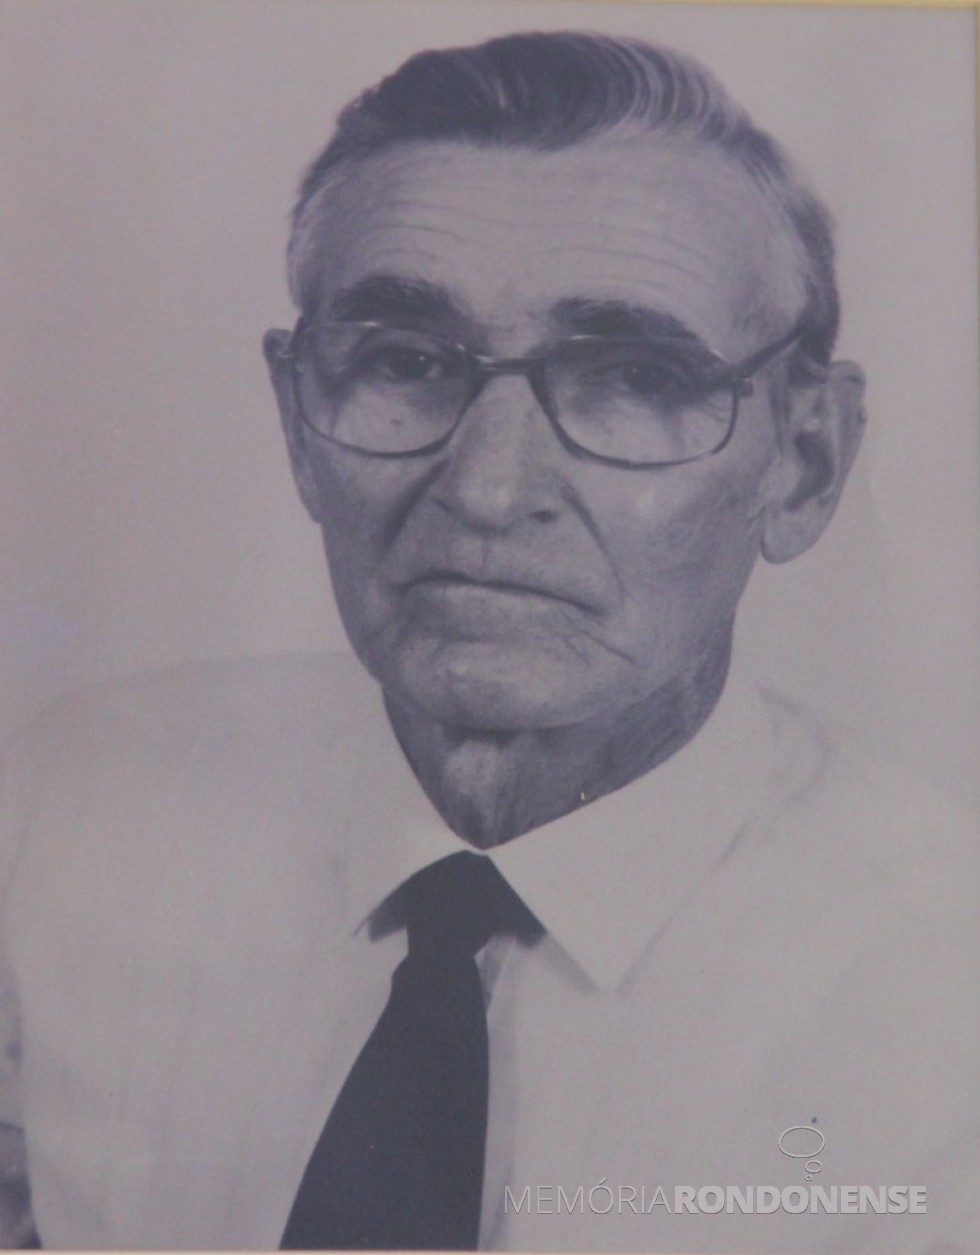 || José Hermeto Kuhn, ex-vereador de Toledo (PR), falecido em dezembro de 2014.
Imagem: Acervo Câmara Municipal de Toledo - FOTO 9 - 